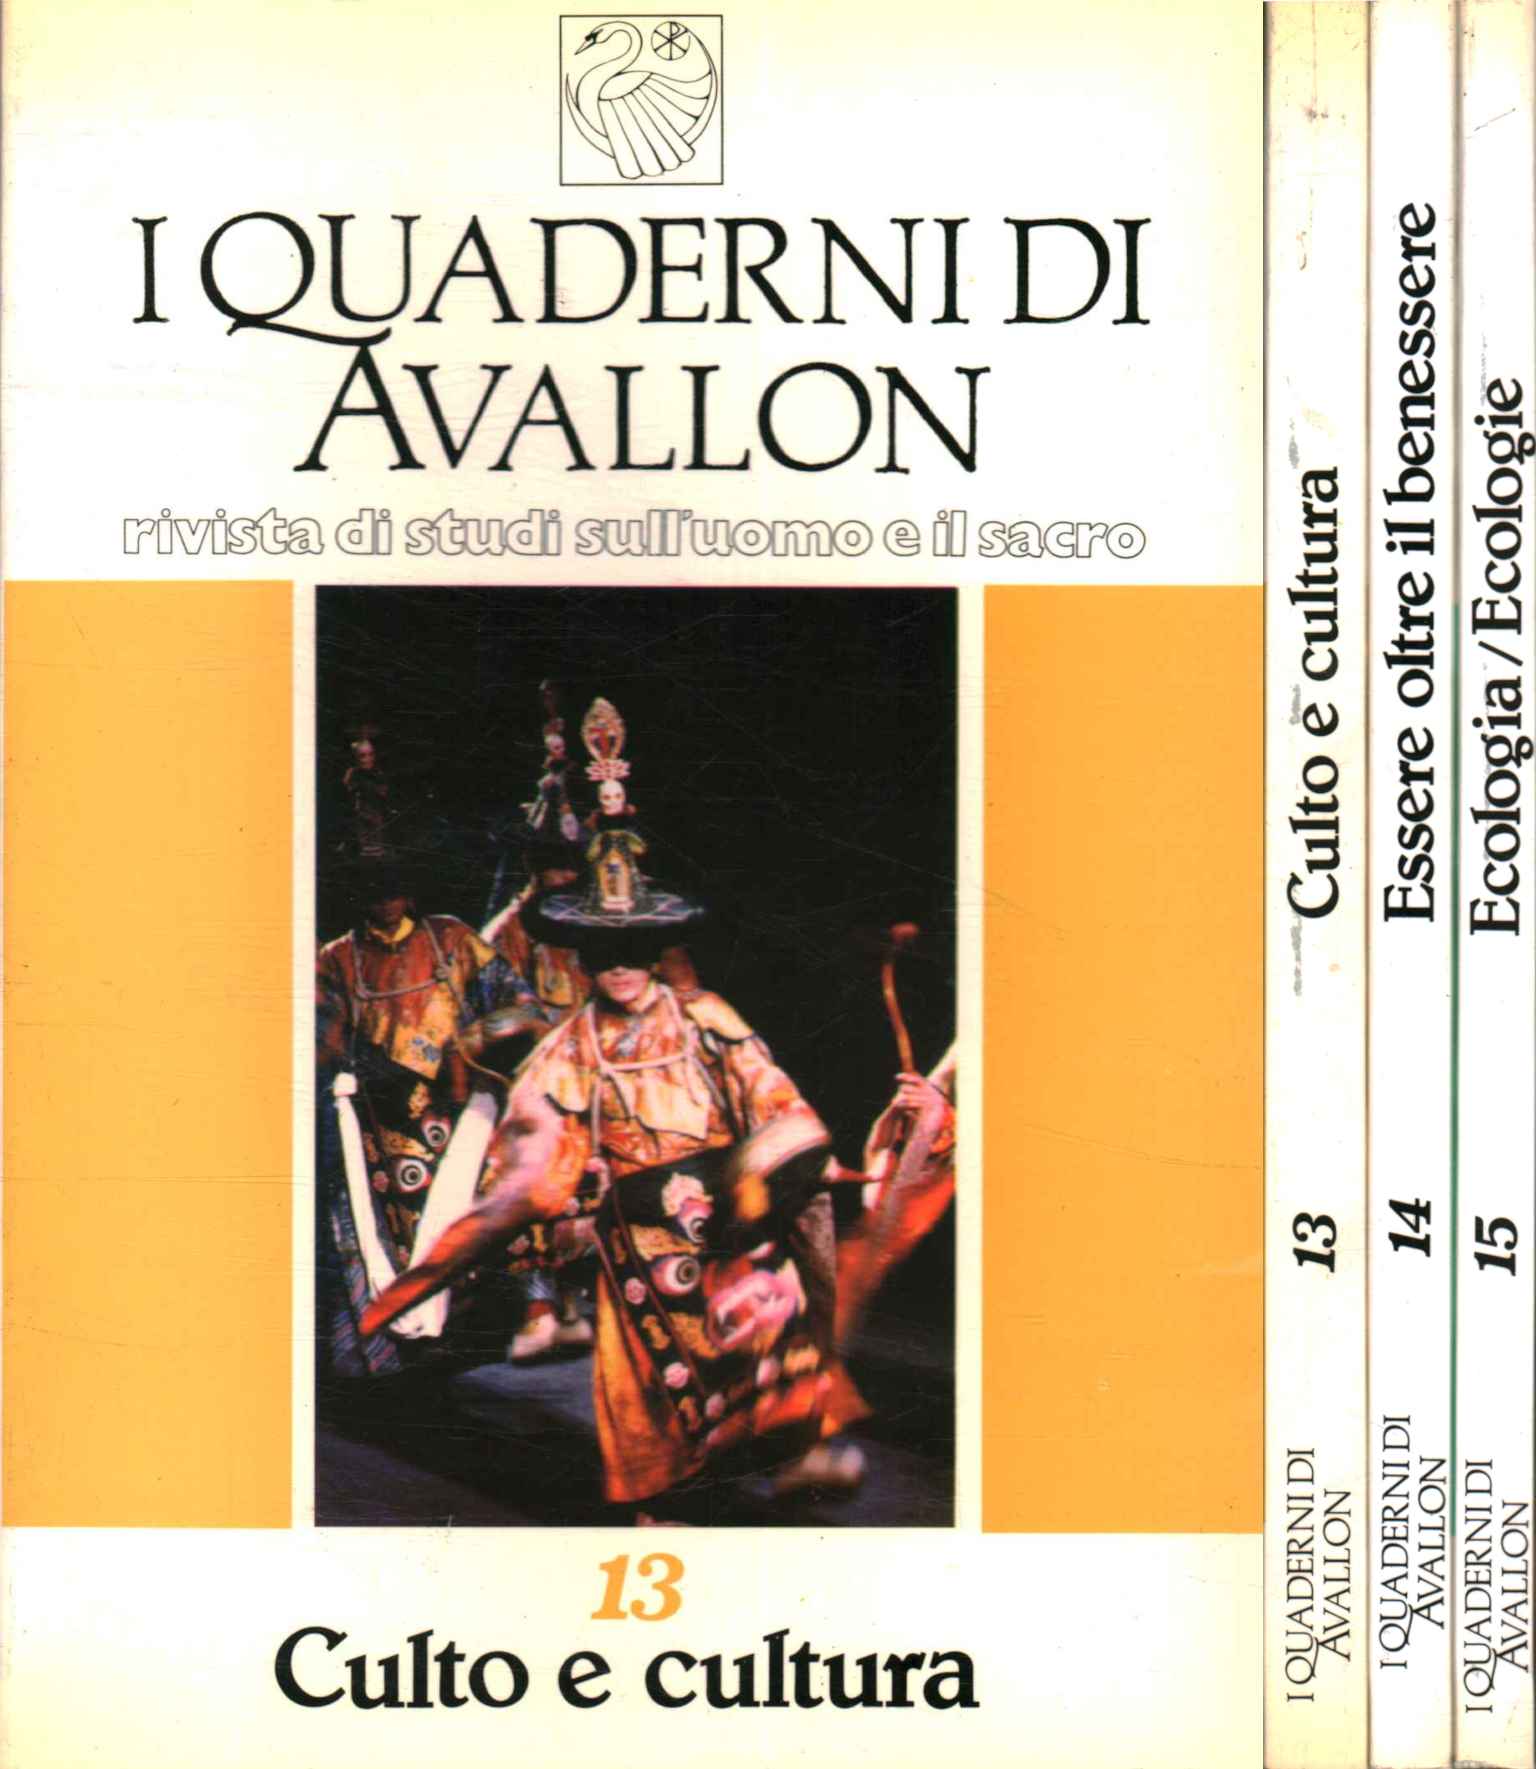 I Quaderni di Avallon. Rivista di stud